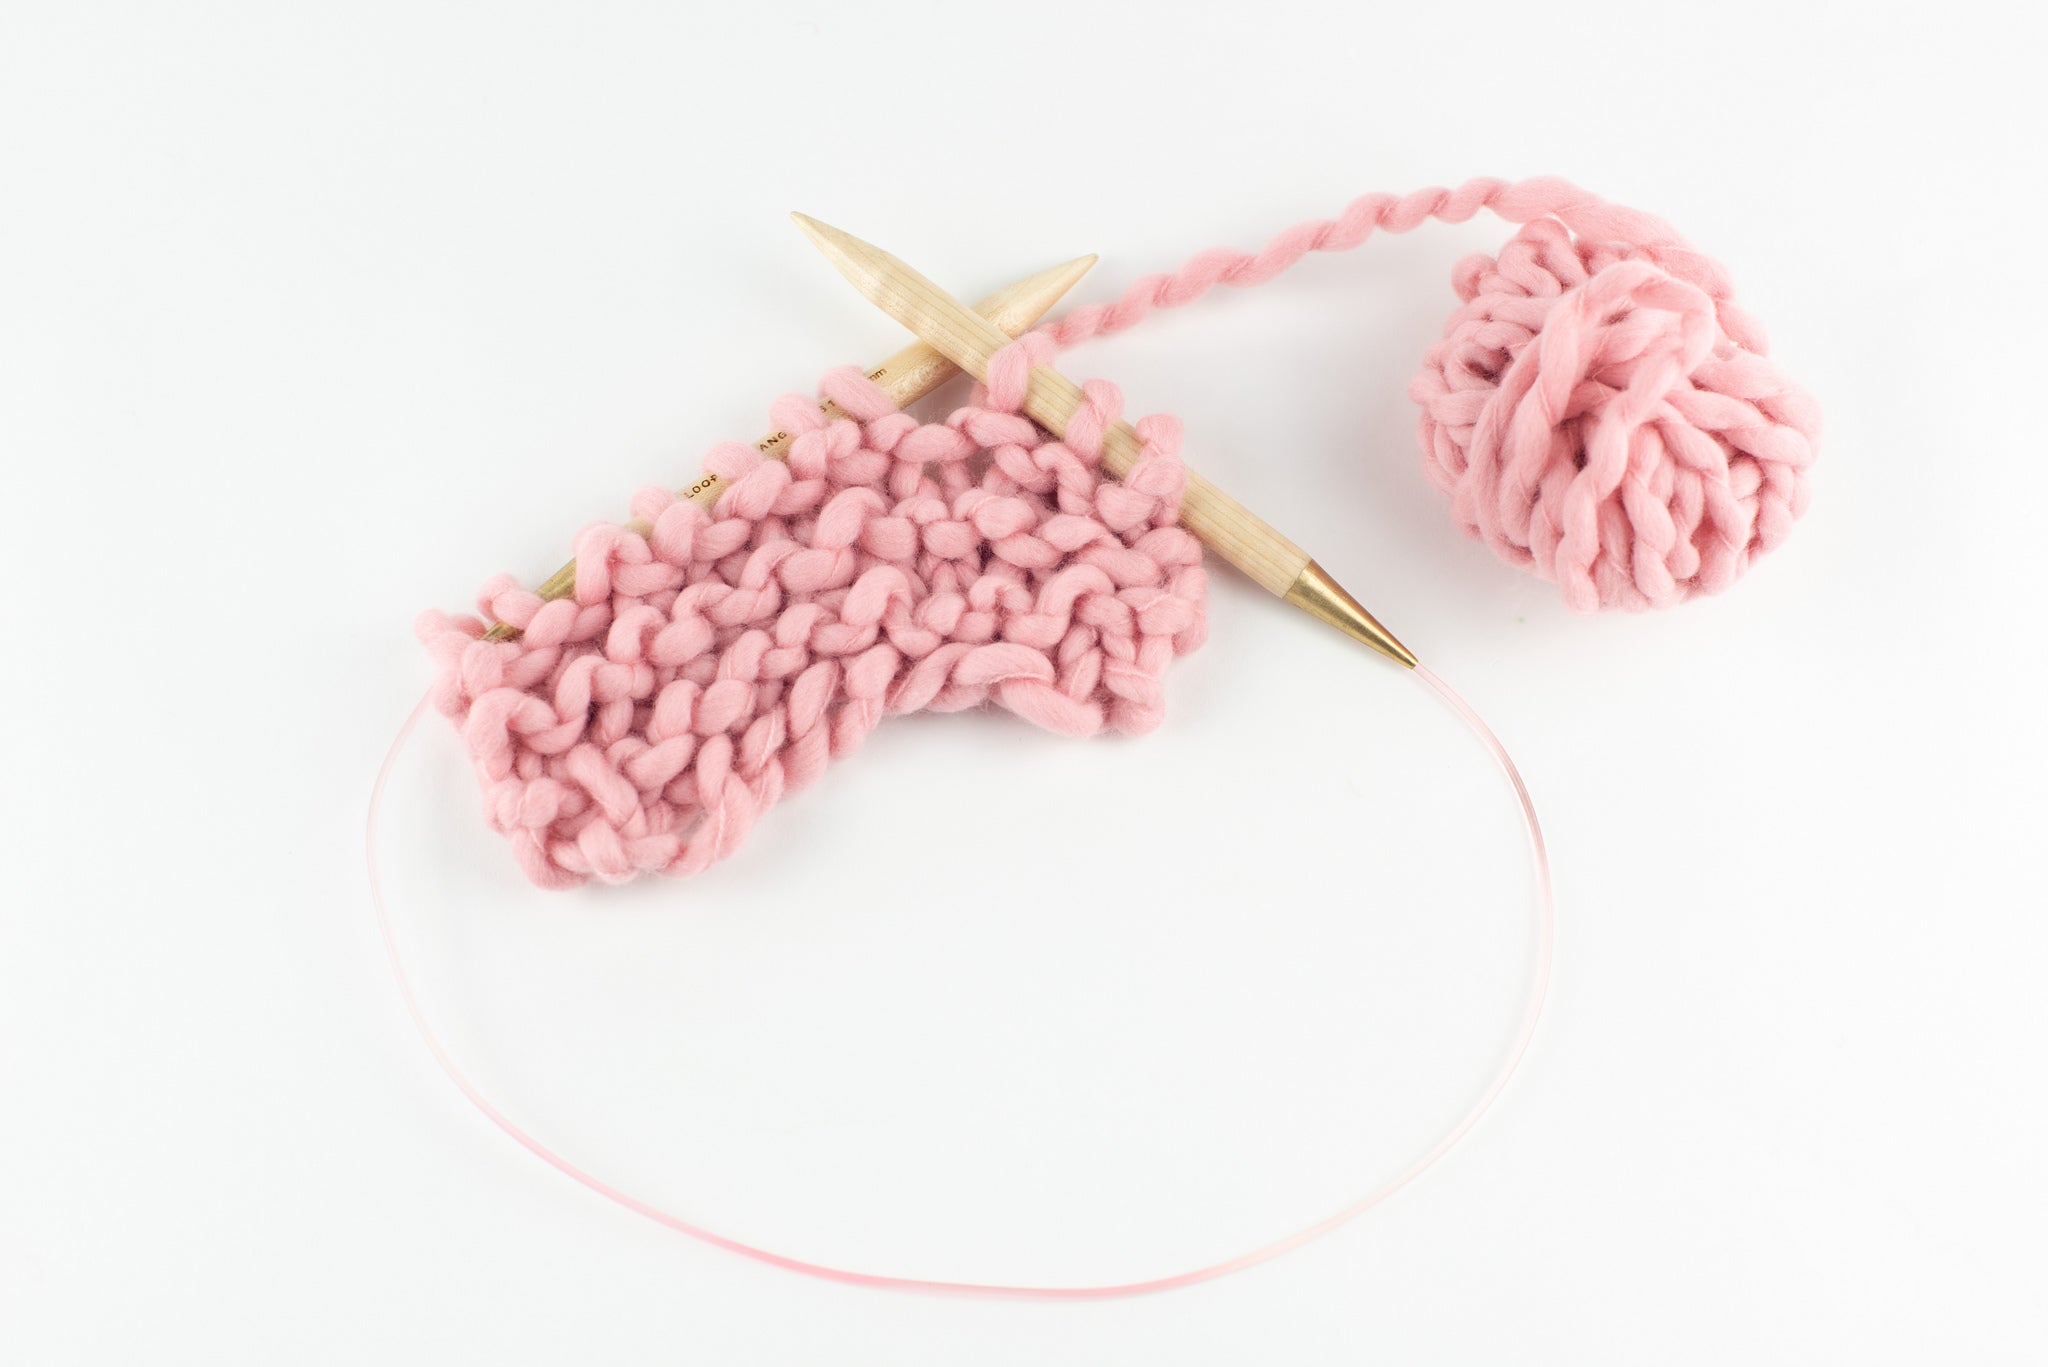 LYUMO Multicolor Plastic Circular Tube Knitting Needles Kit